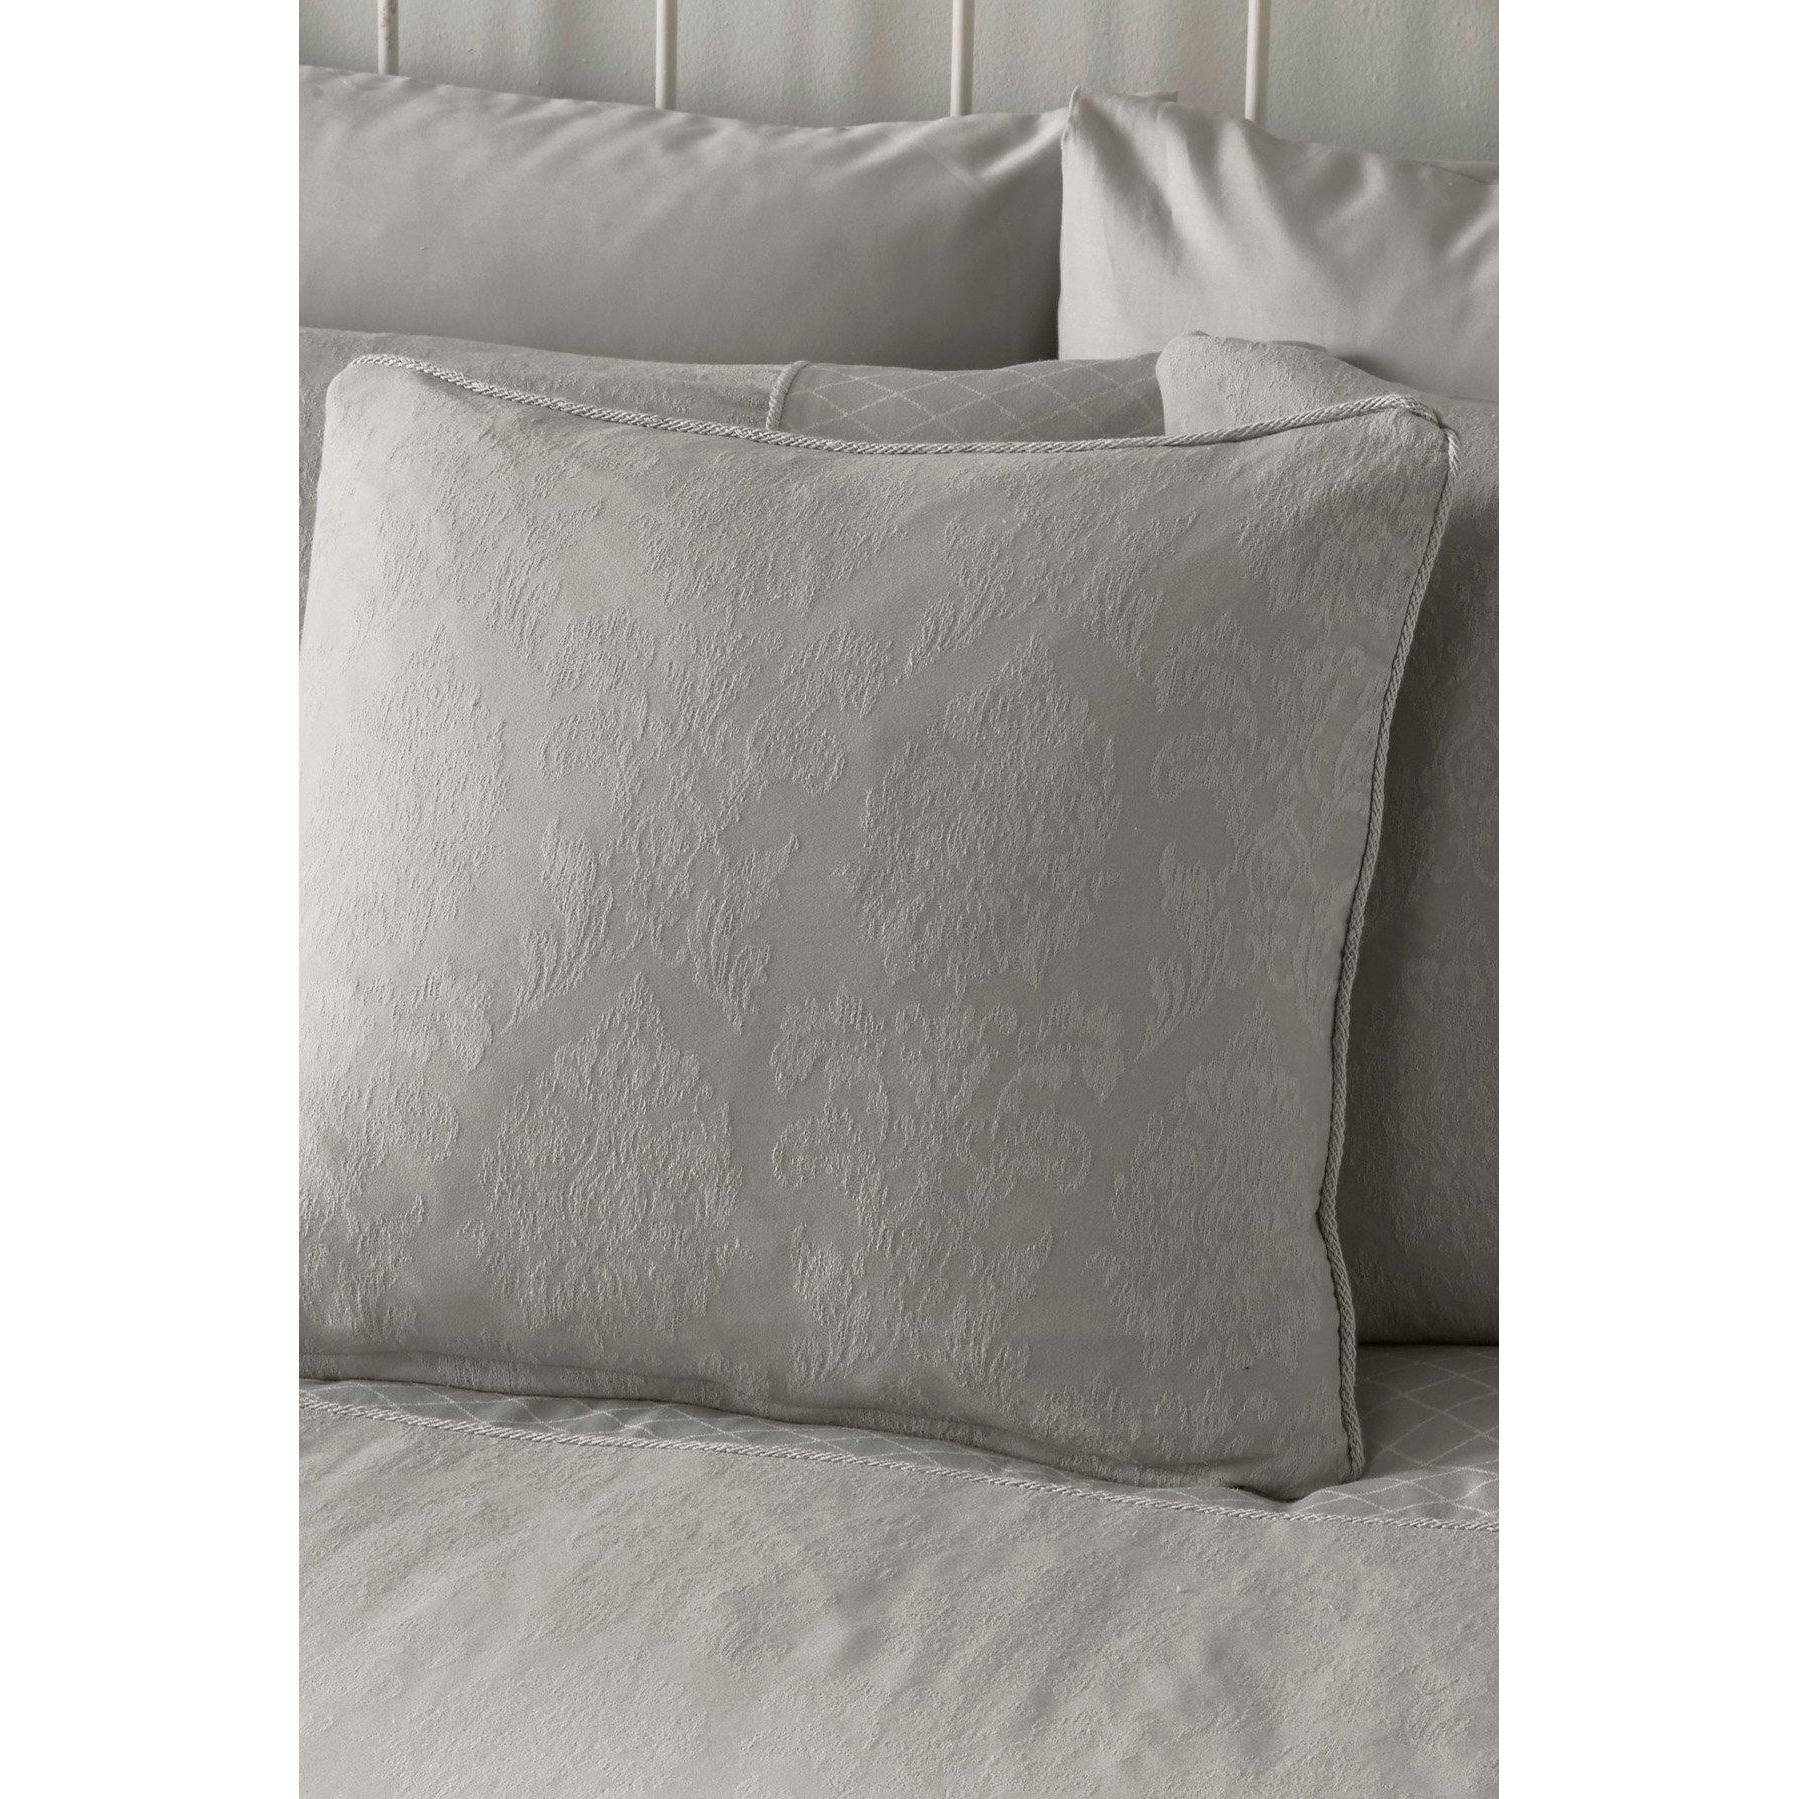 'Rosana' Luxury Damask Filled Bedroom Cushion - image 1